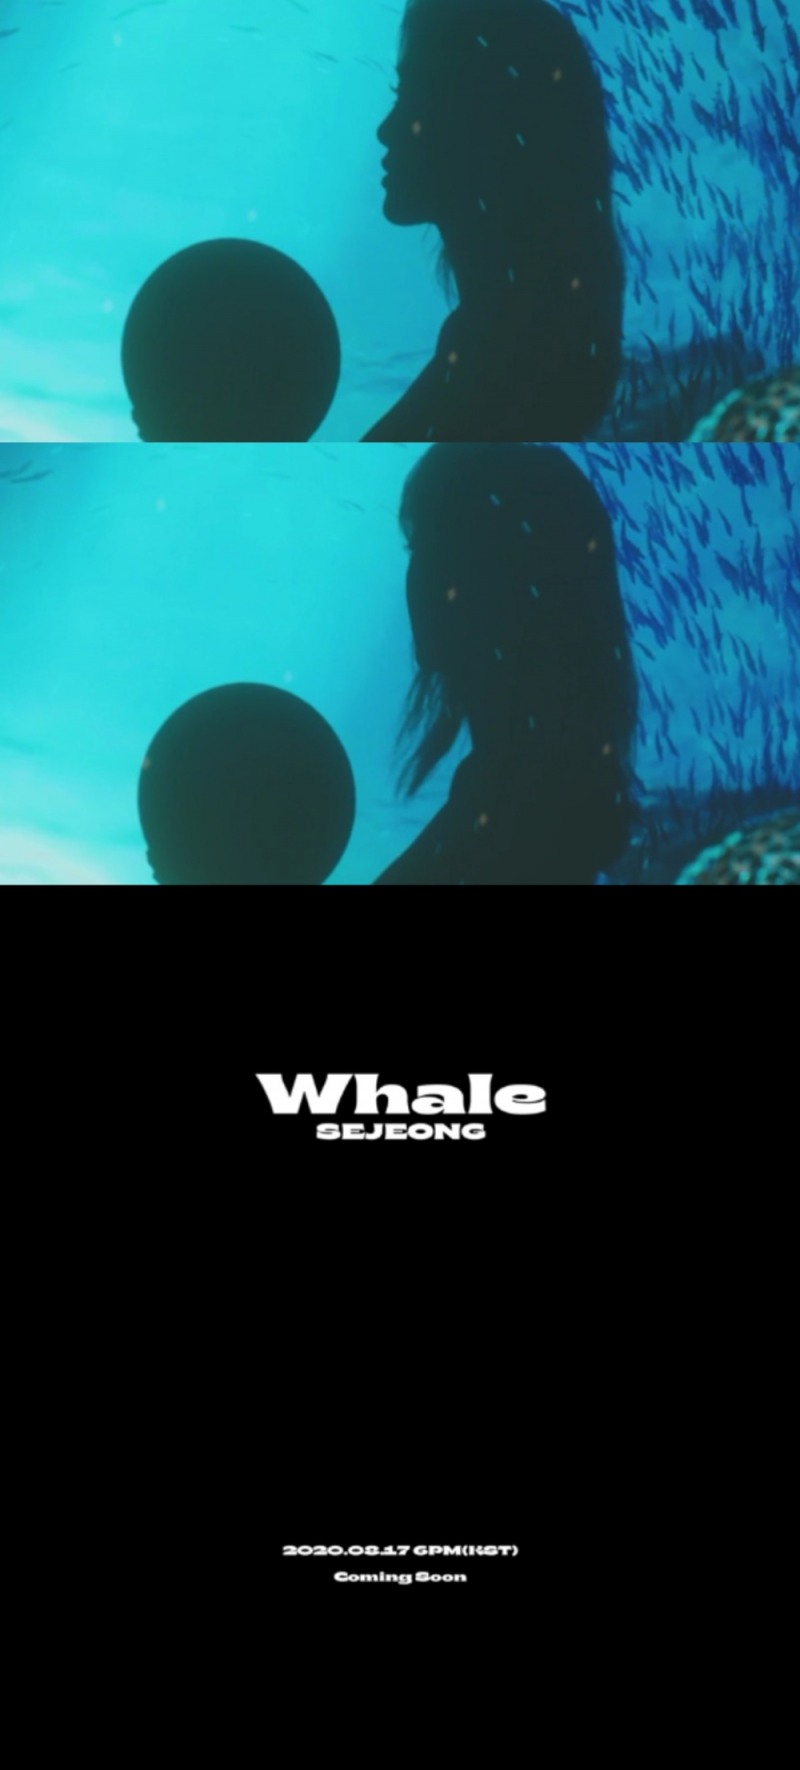 세정, 자작곡 ‘Whale’ 17일 발매 5개월 만에 컴백